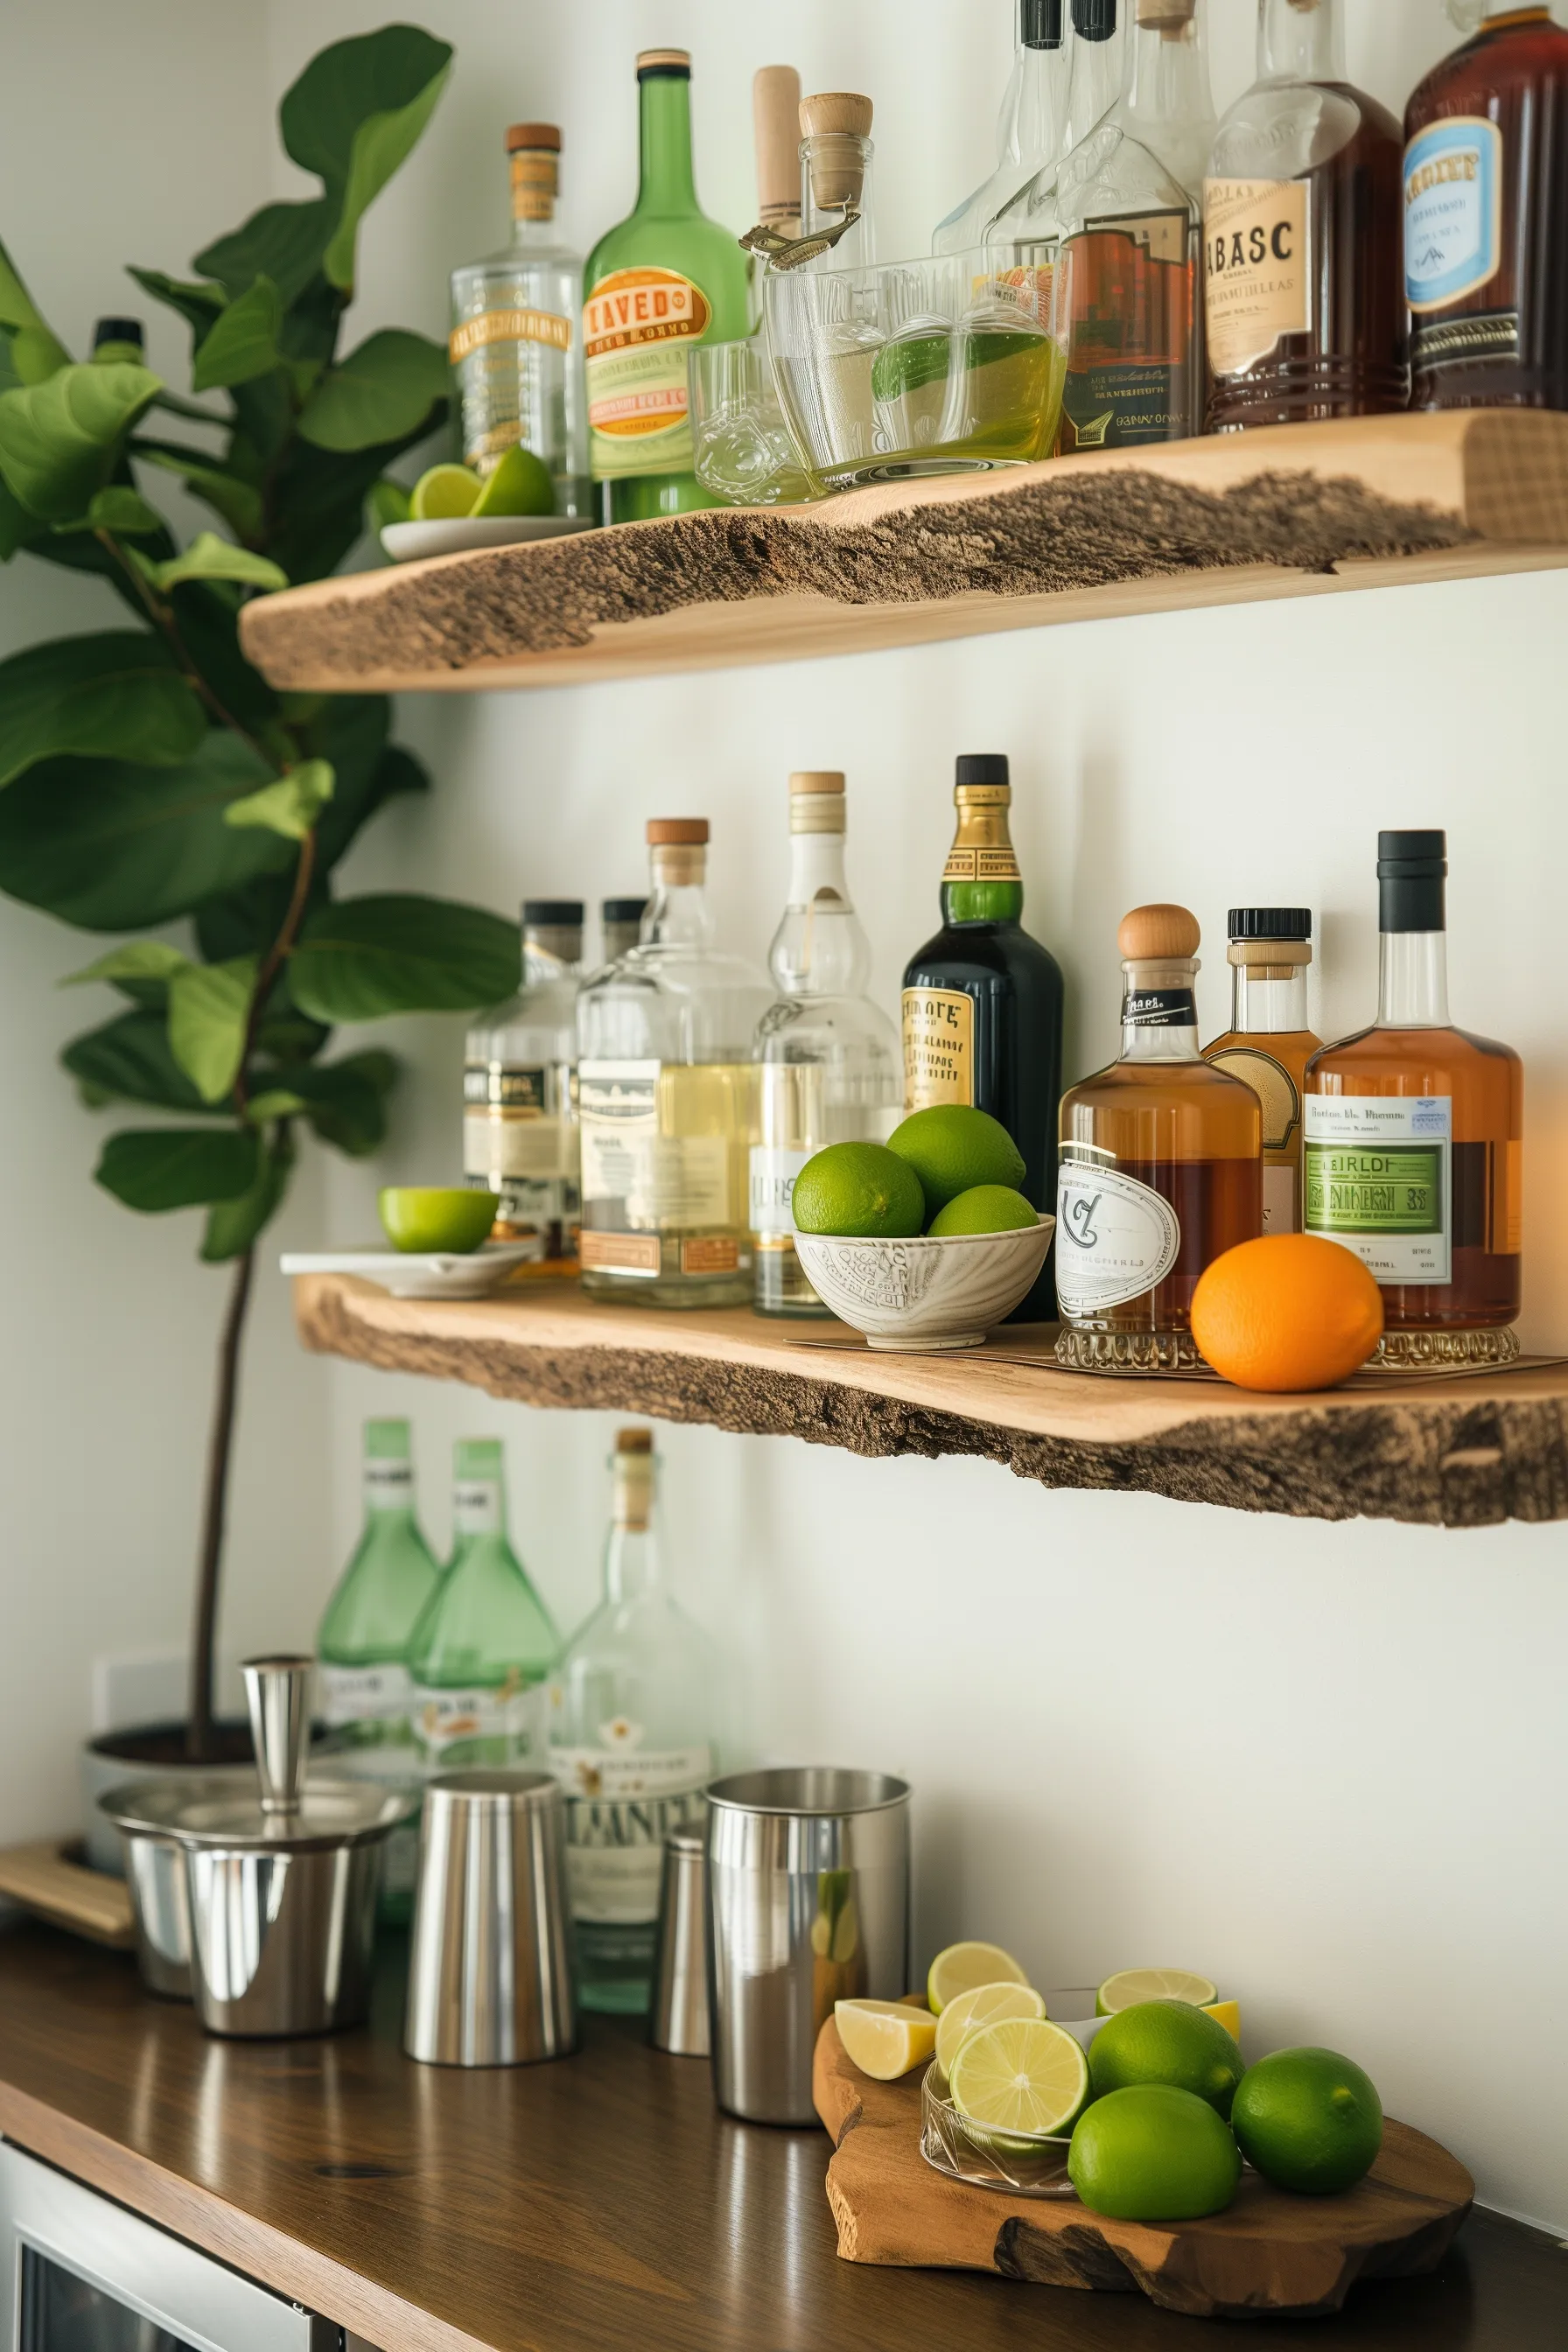 A margarita bar themed shelf